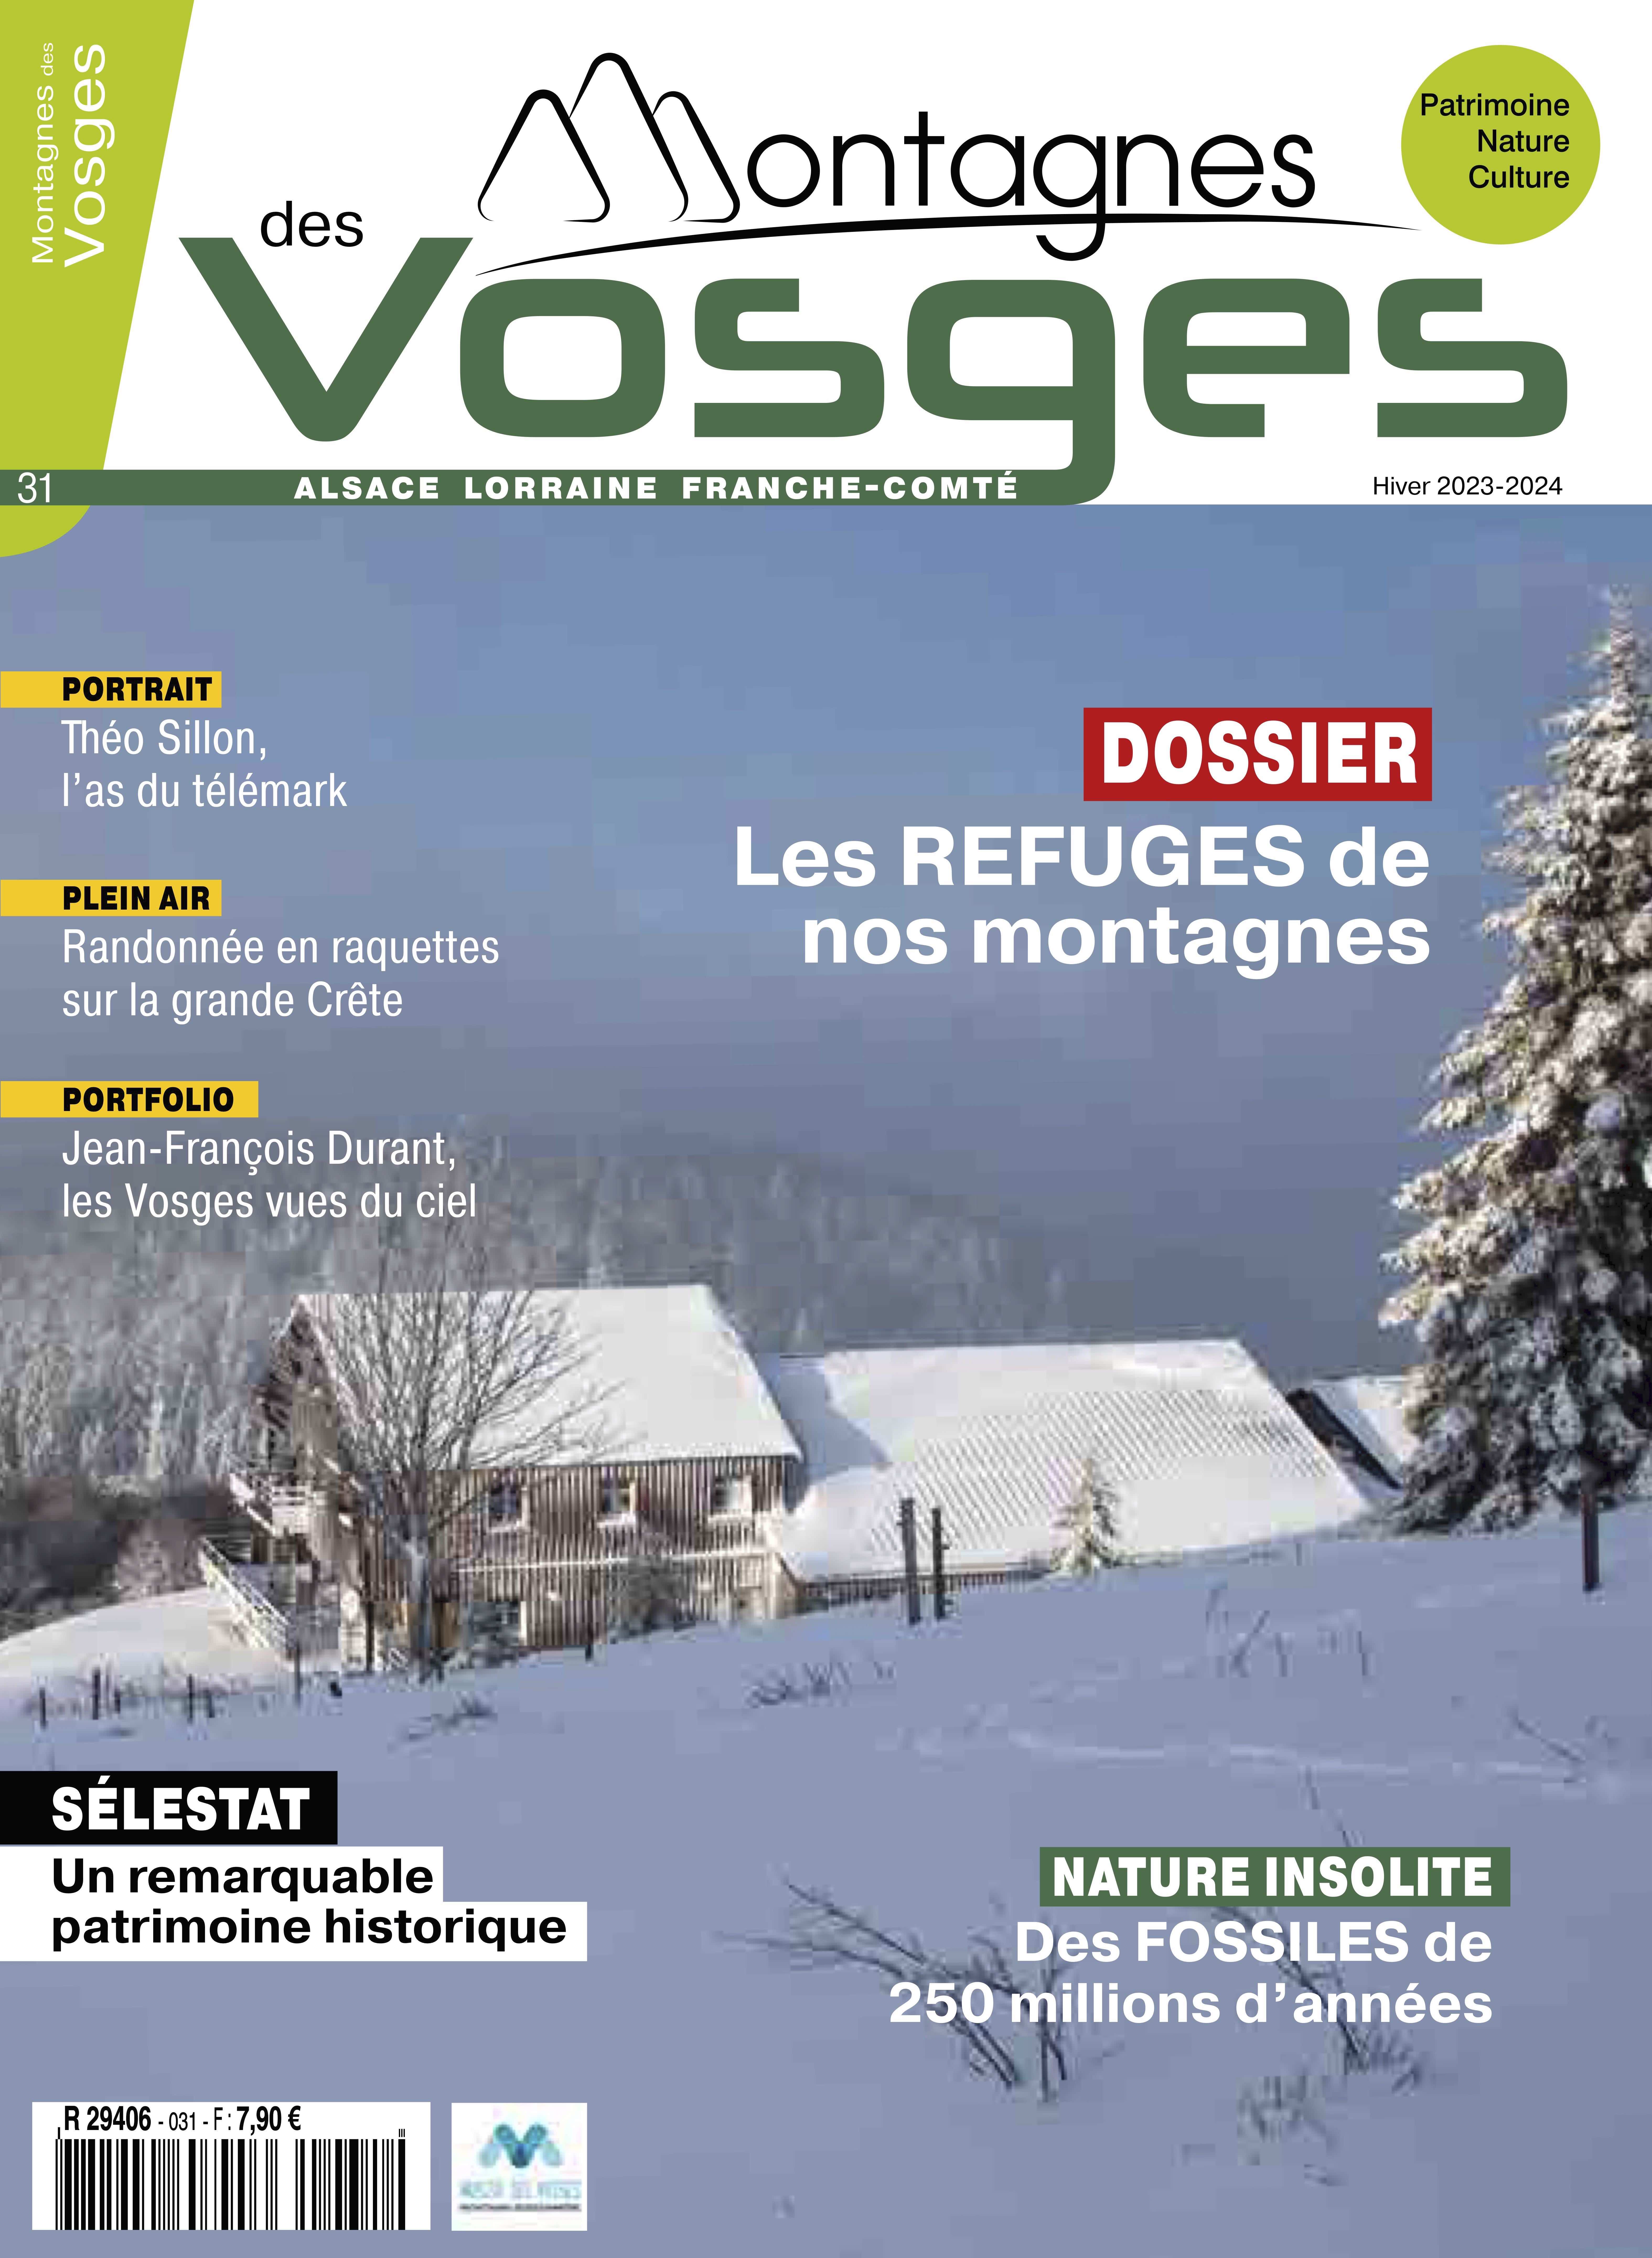 Magazine Montagnes des vosges - LE MAGAZINE HIVER 2023/2024 EST EN VENTE